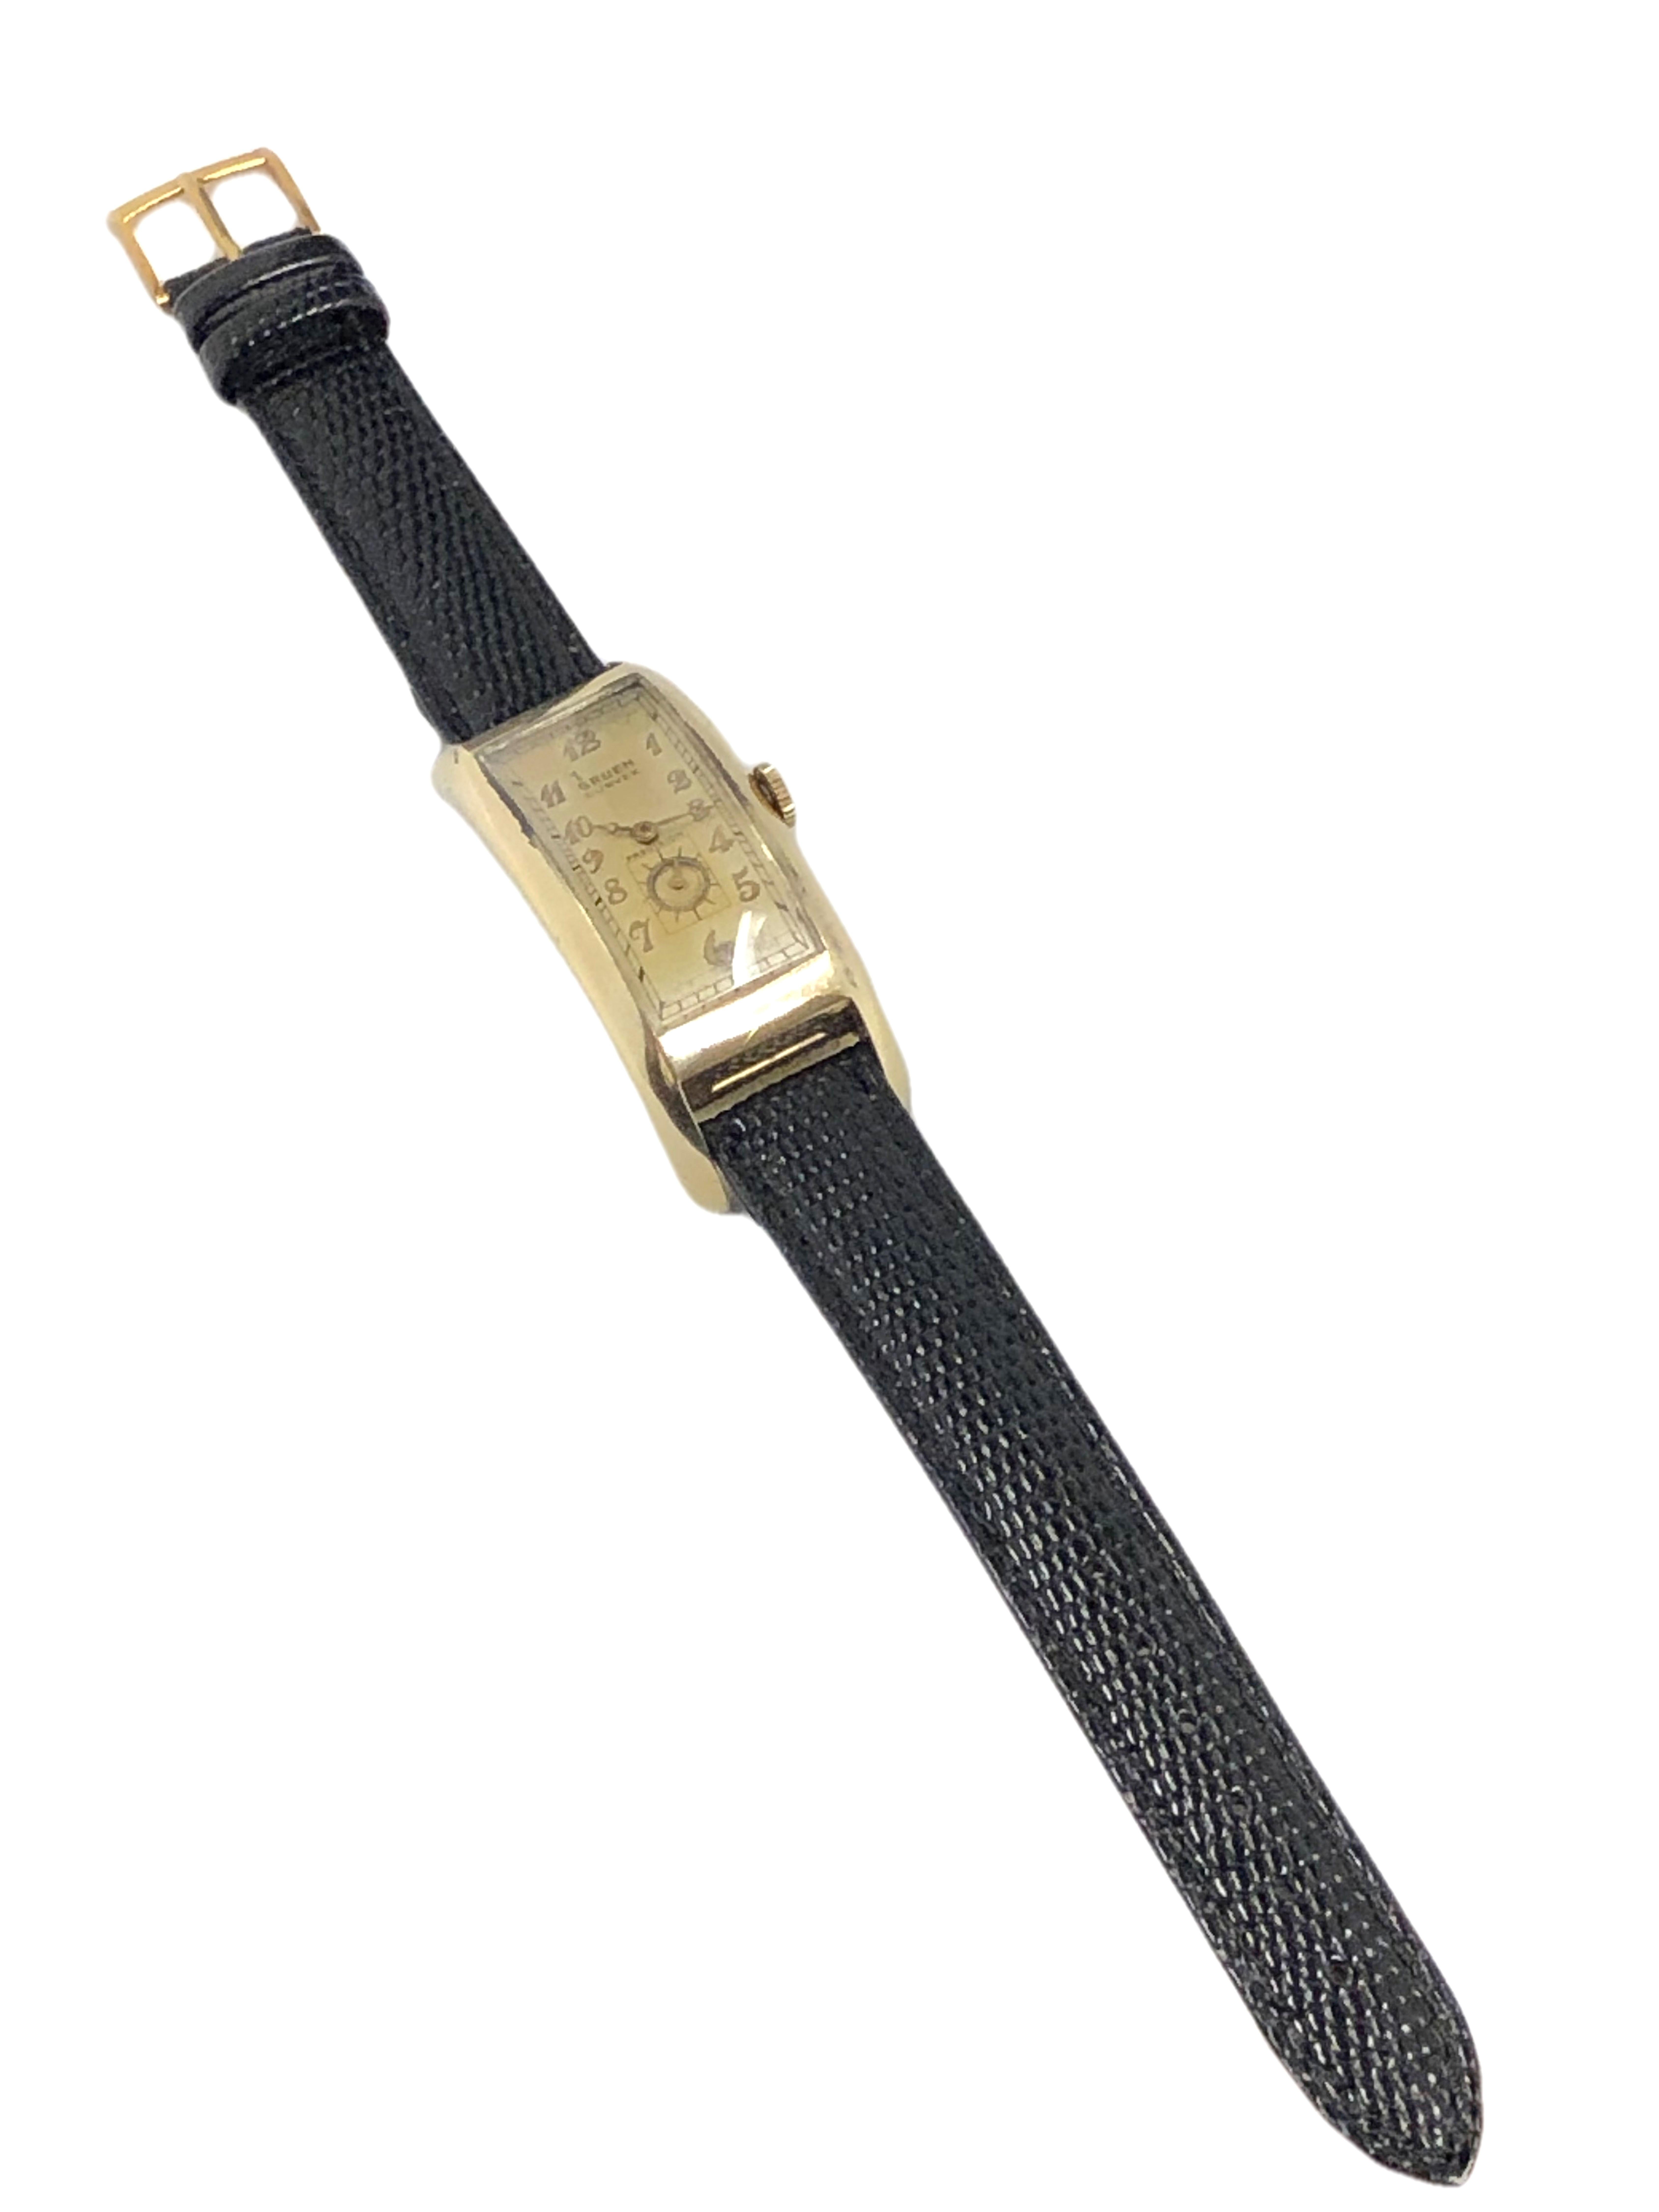 gruen curvex watch vintage